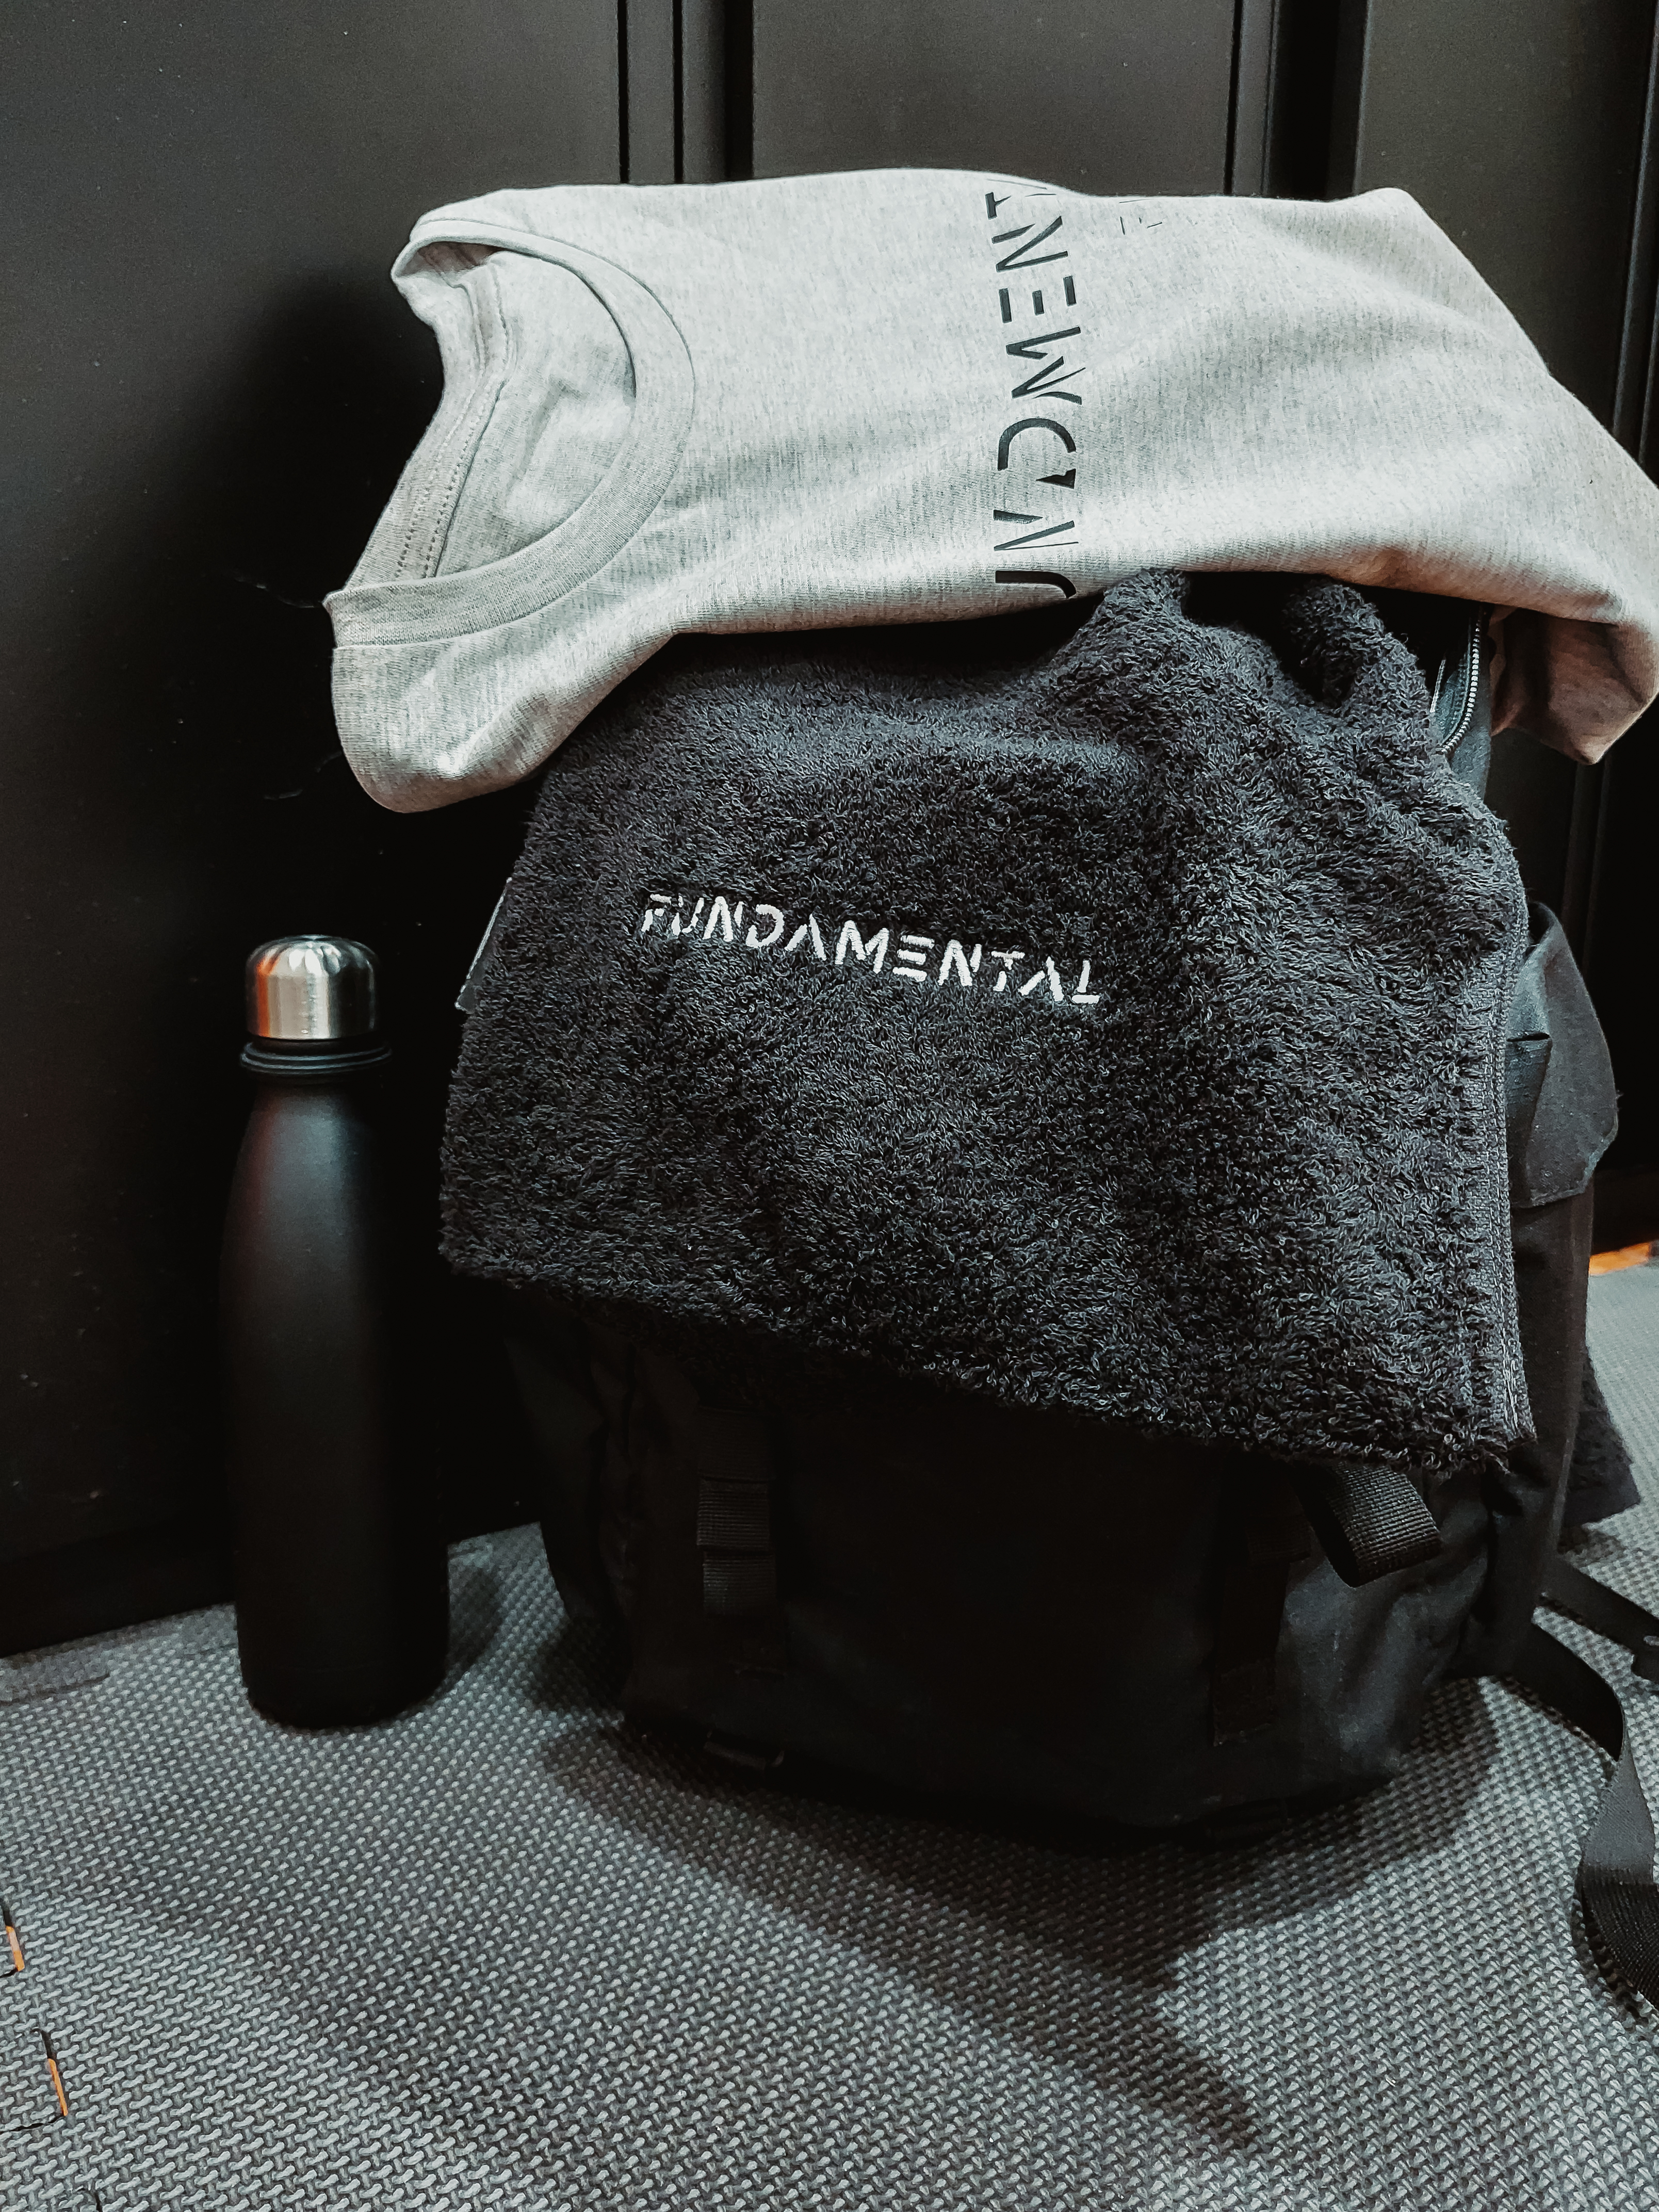 Fundamental Fitness equipment sportswear gym bag CrossFit